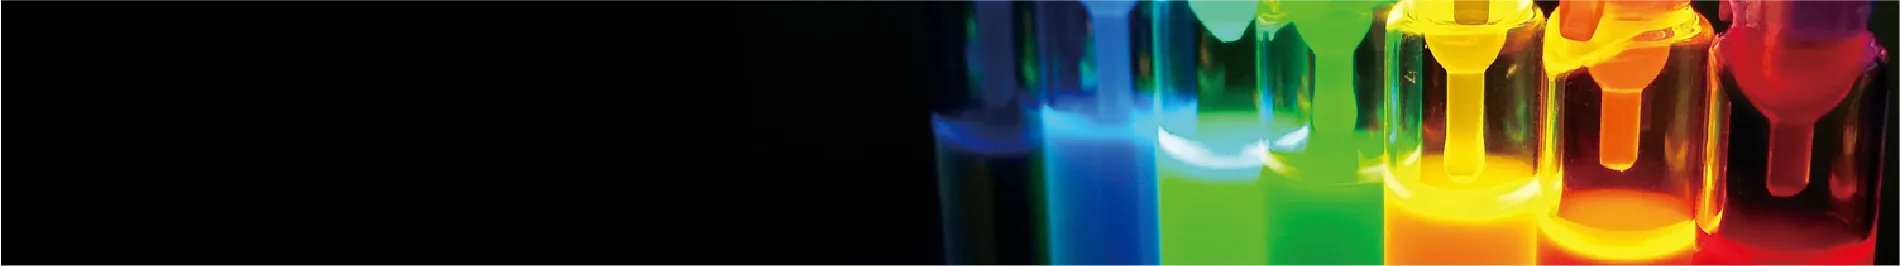 Horiba Fluorescence Spectrometry Header